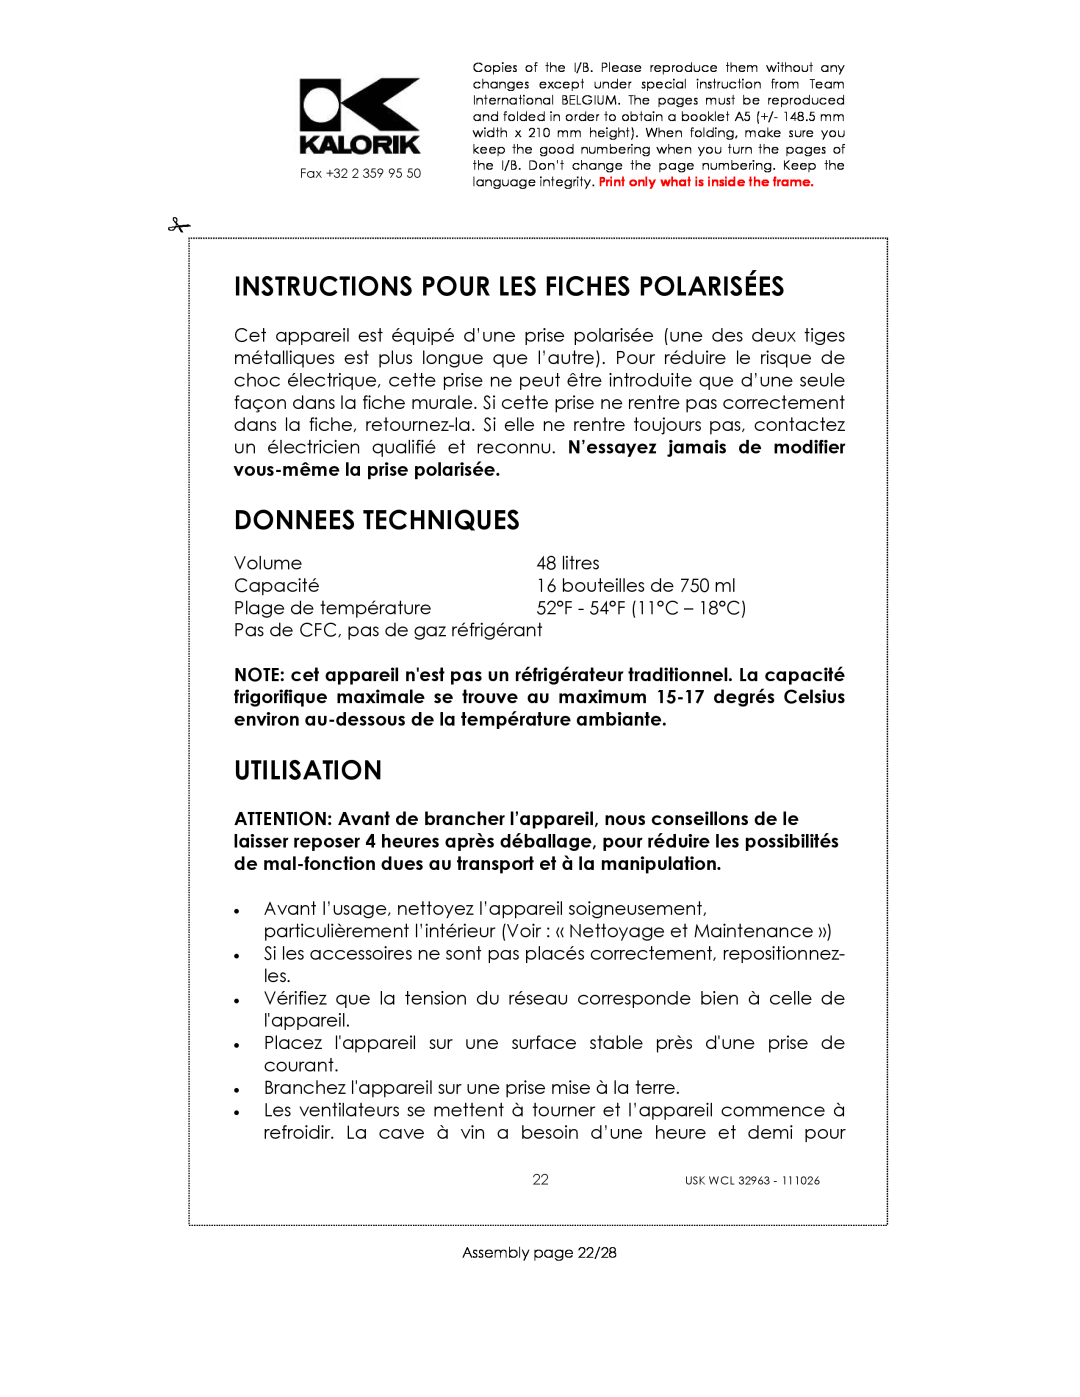 Kalorik USK WCL 32963 manual Instructions Pour Les Fiches Polarisées, Donnees Techniques, Utilisation 